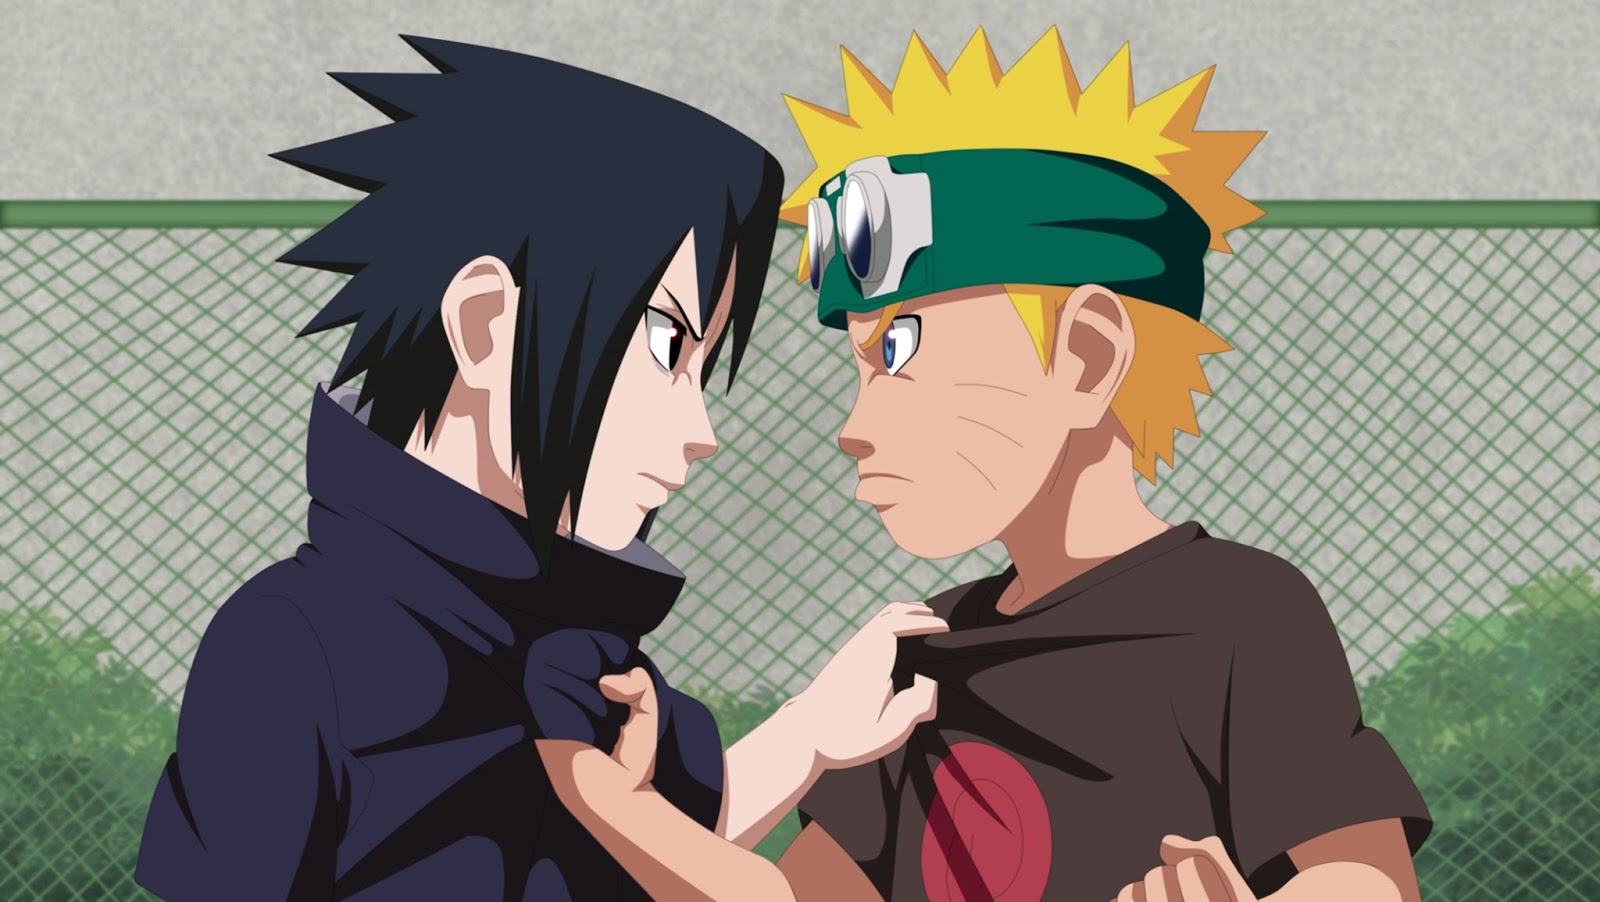 WallpapersKu: Naruto vs Sasuke Wallpapers